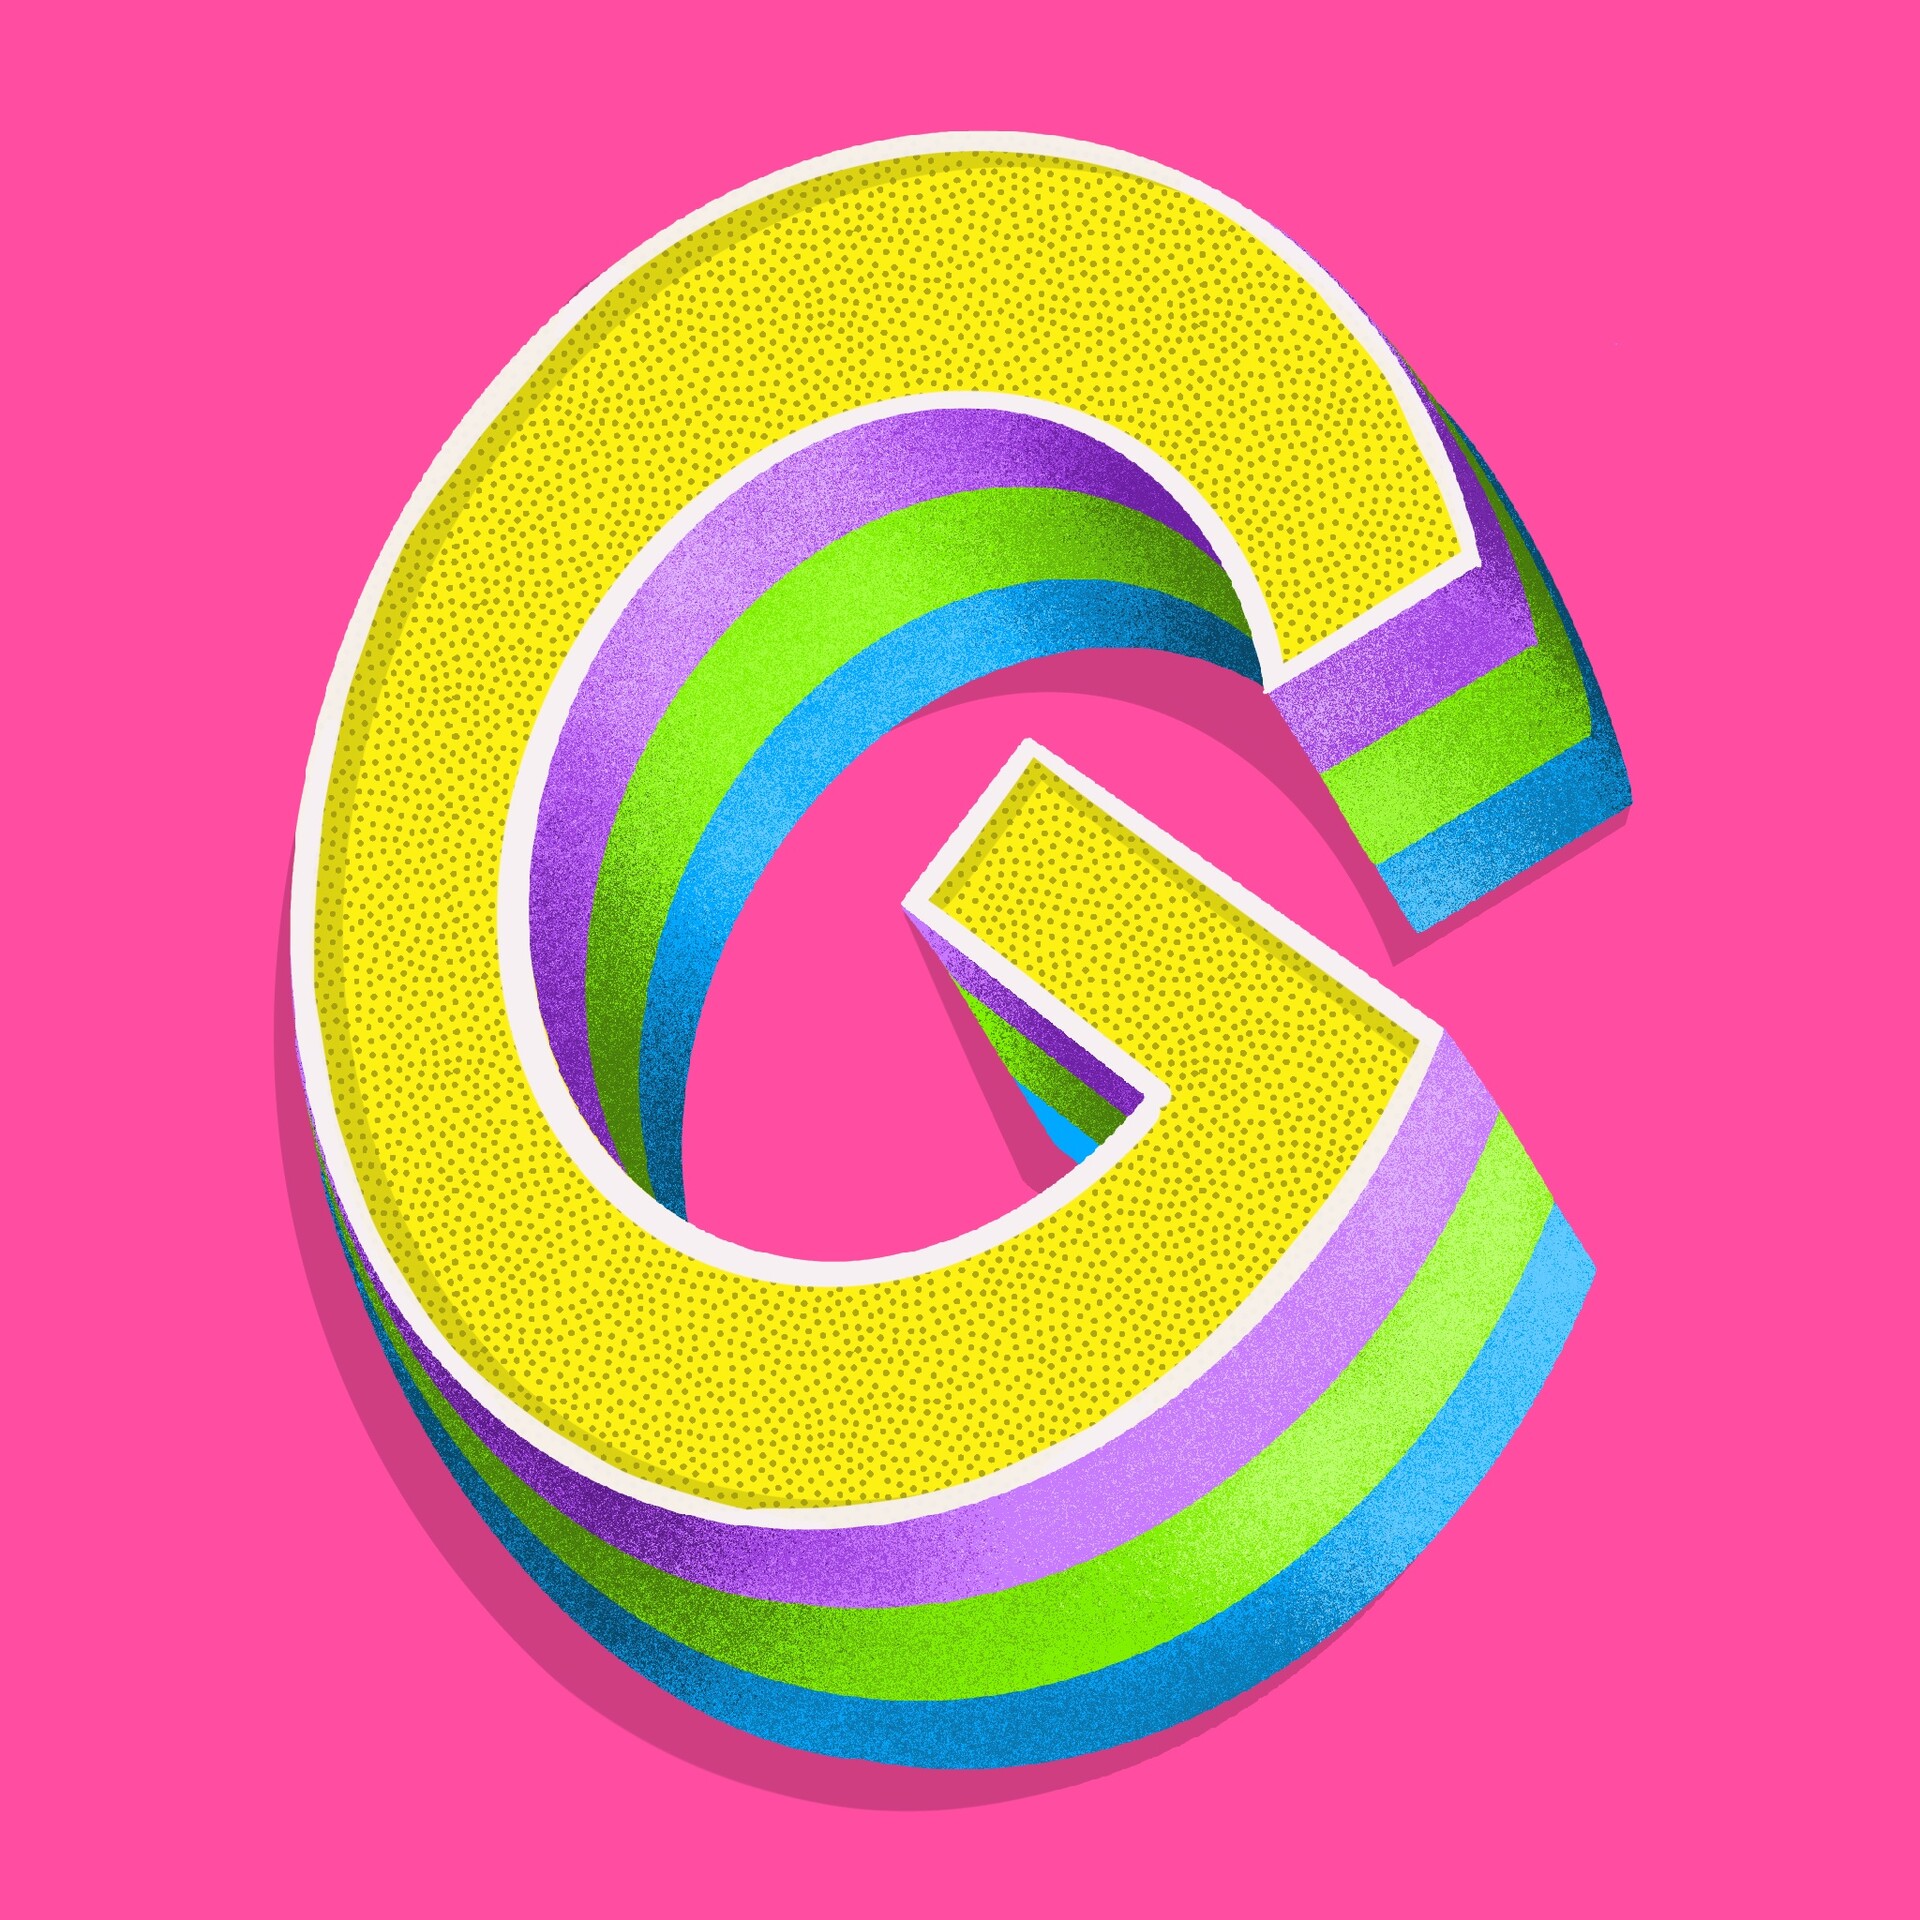 ArtStation - letter g